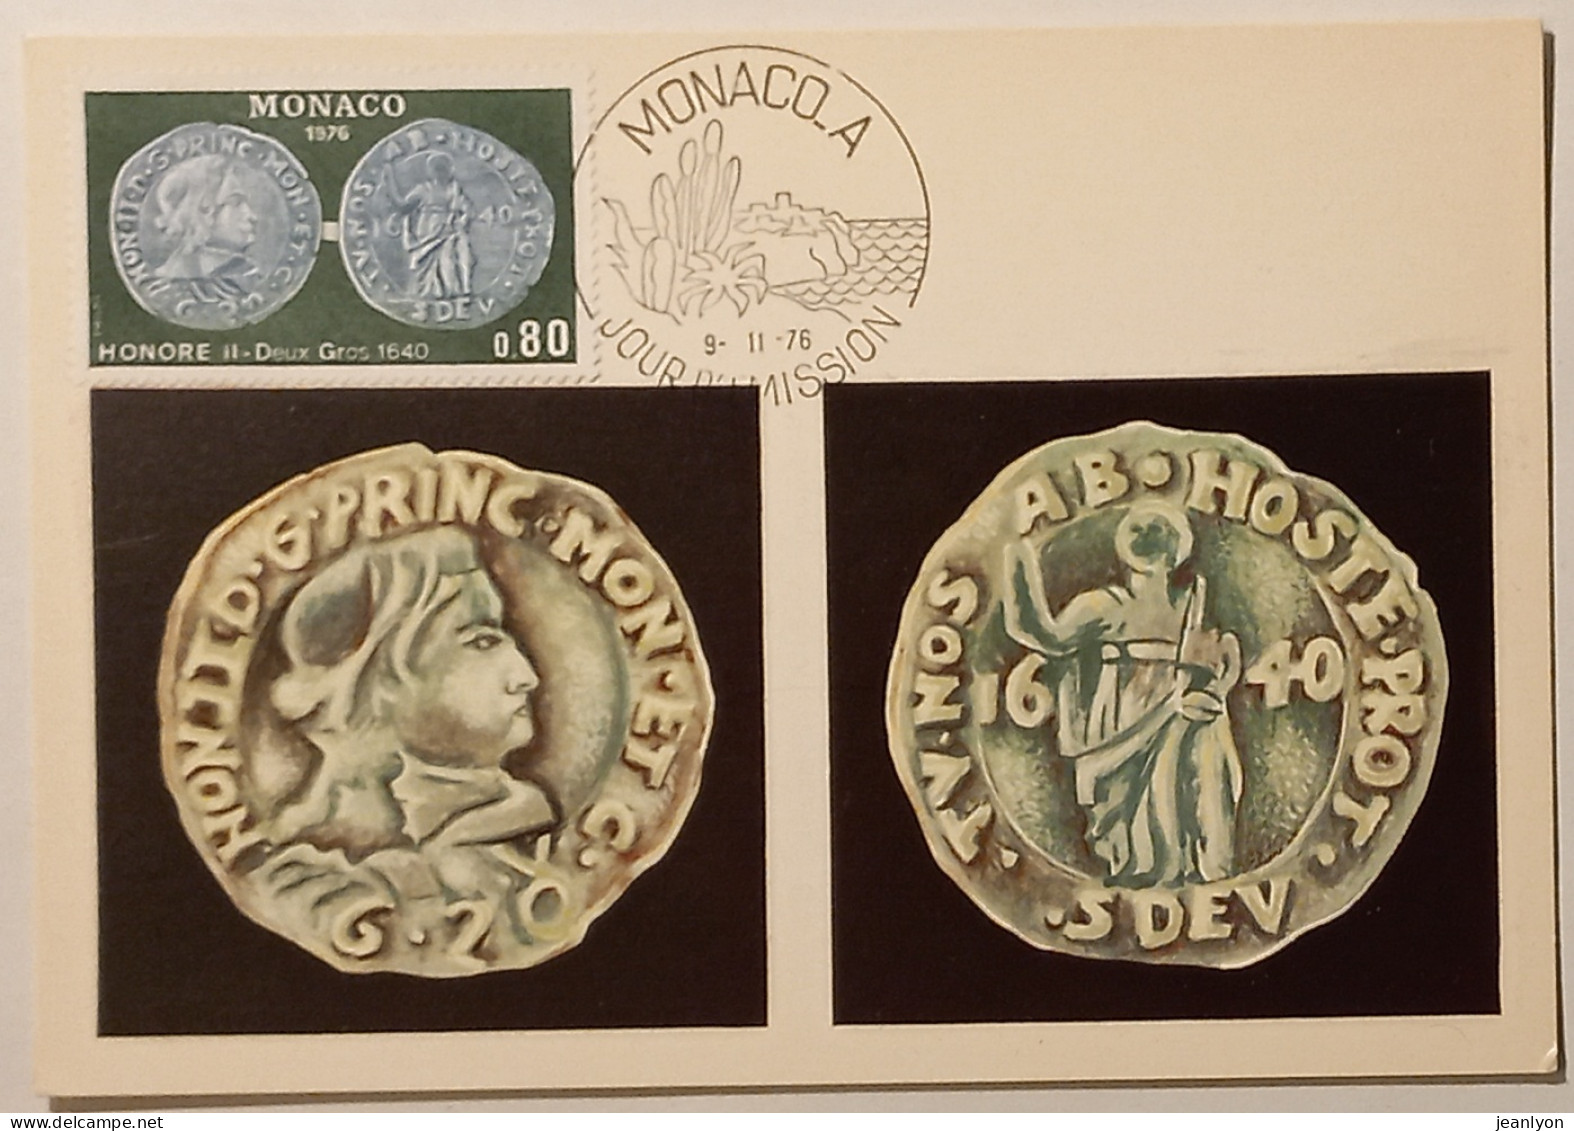 MONNAIE / PIECE HONORE II Deux Gros 1640 - Carte Philatélique Monaco Avec Timbre Et Cachet 1er Jour - Monnaies (représentations)